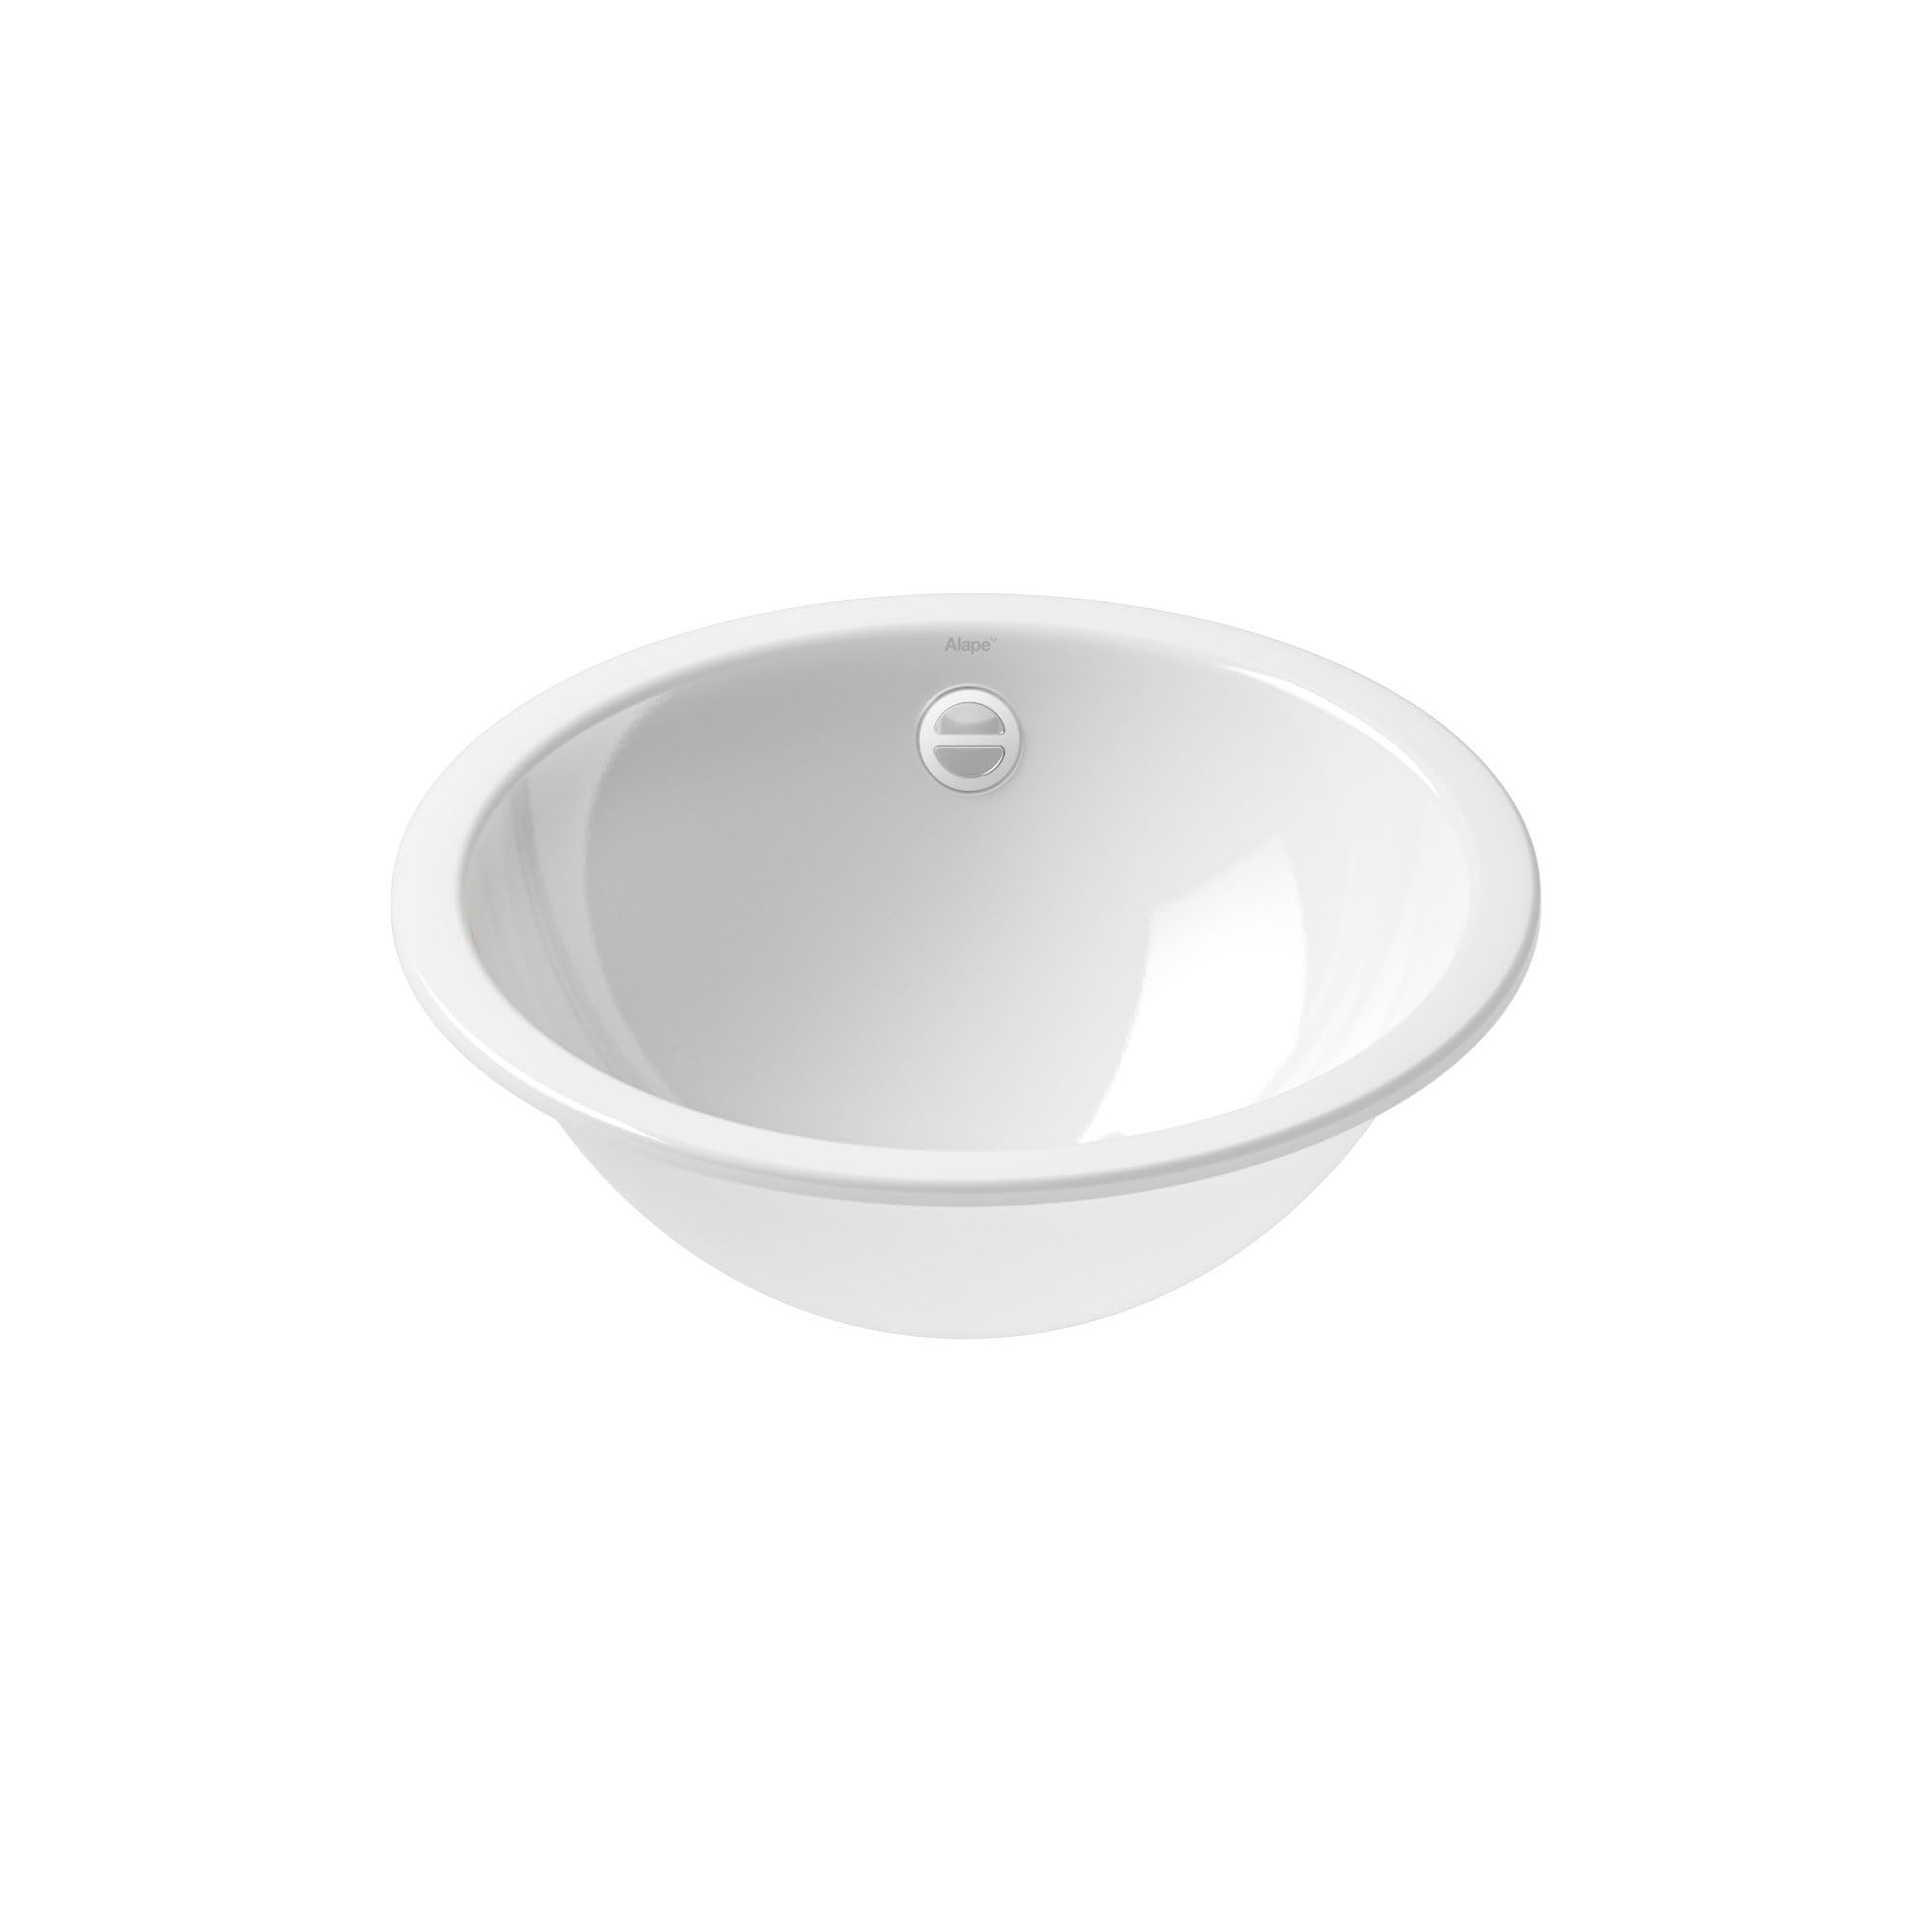 Alape˘ EB.K400 Einbaubecken, Waschbecken aus glasiertem Stahl in weiß mit antibakterieller Oberfläche, rund, Ø 40 cm, Höhe 14 cm, mit Überlauf